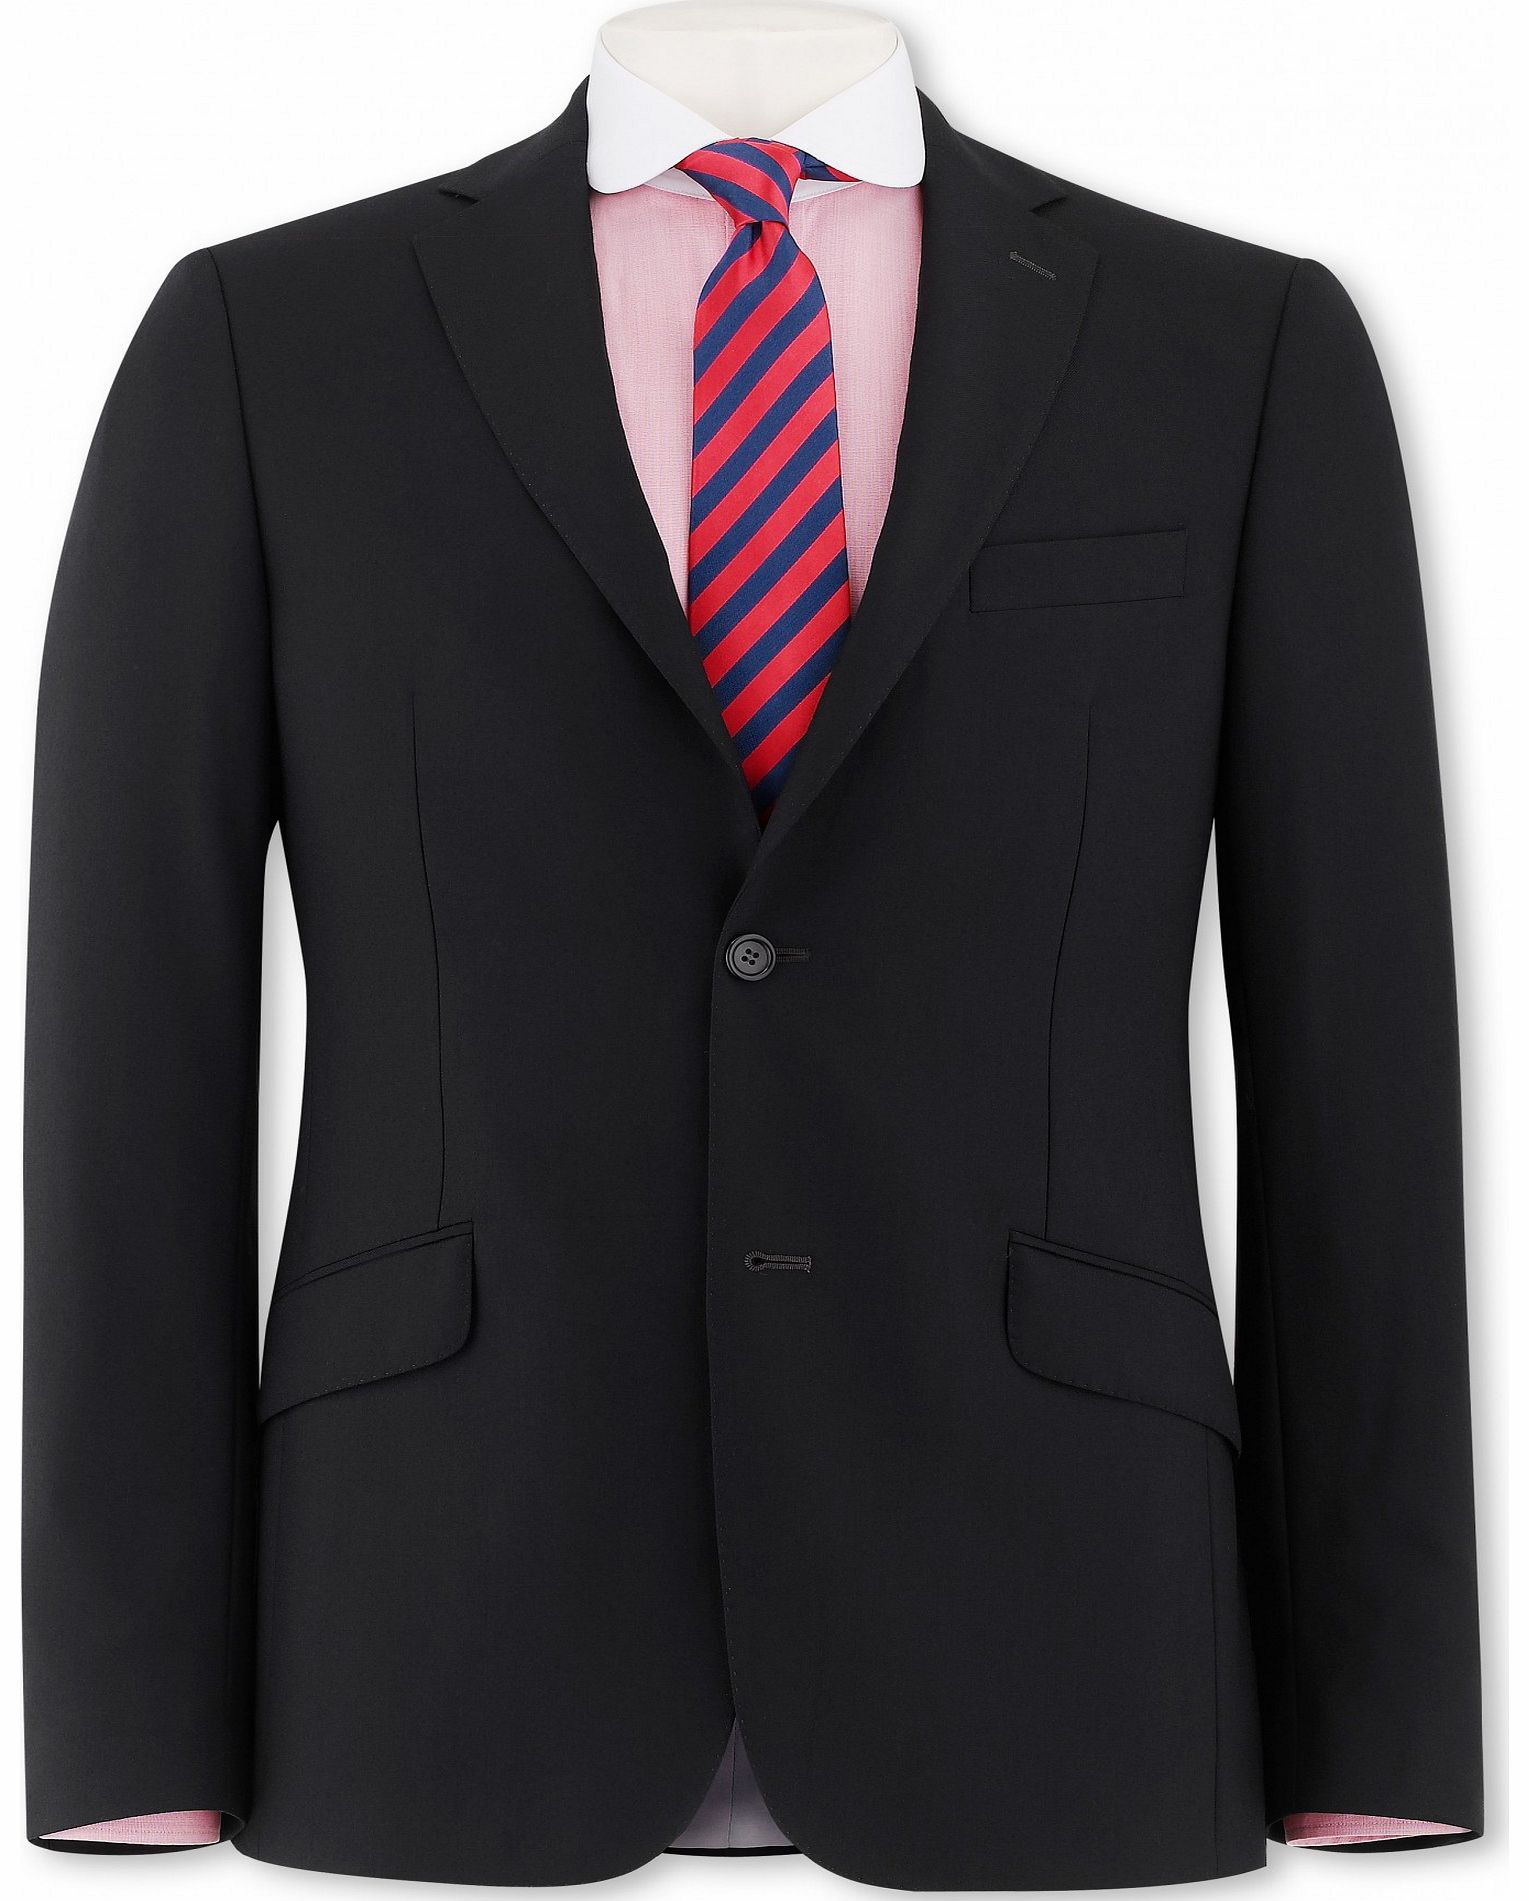 Black Suit Jacket 44`` Long